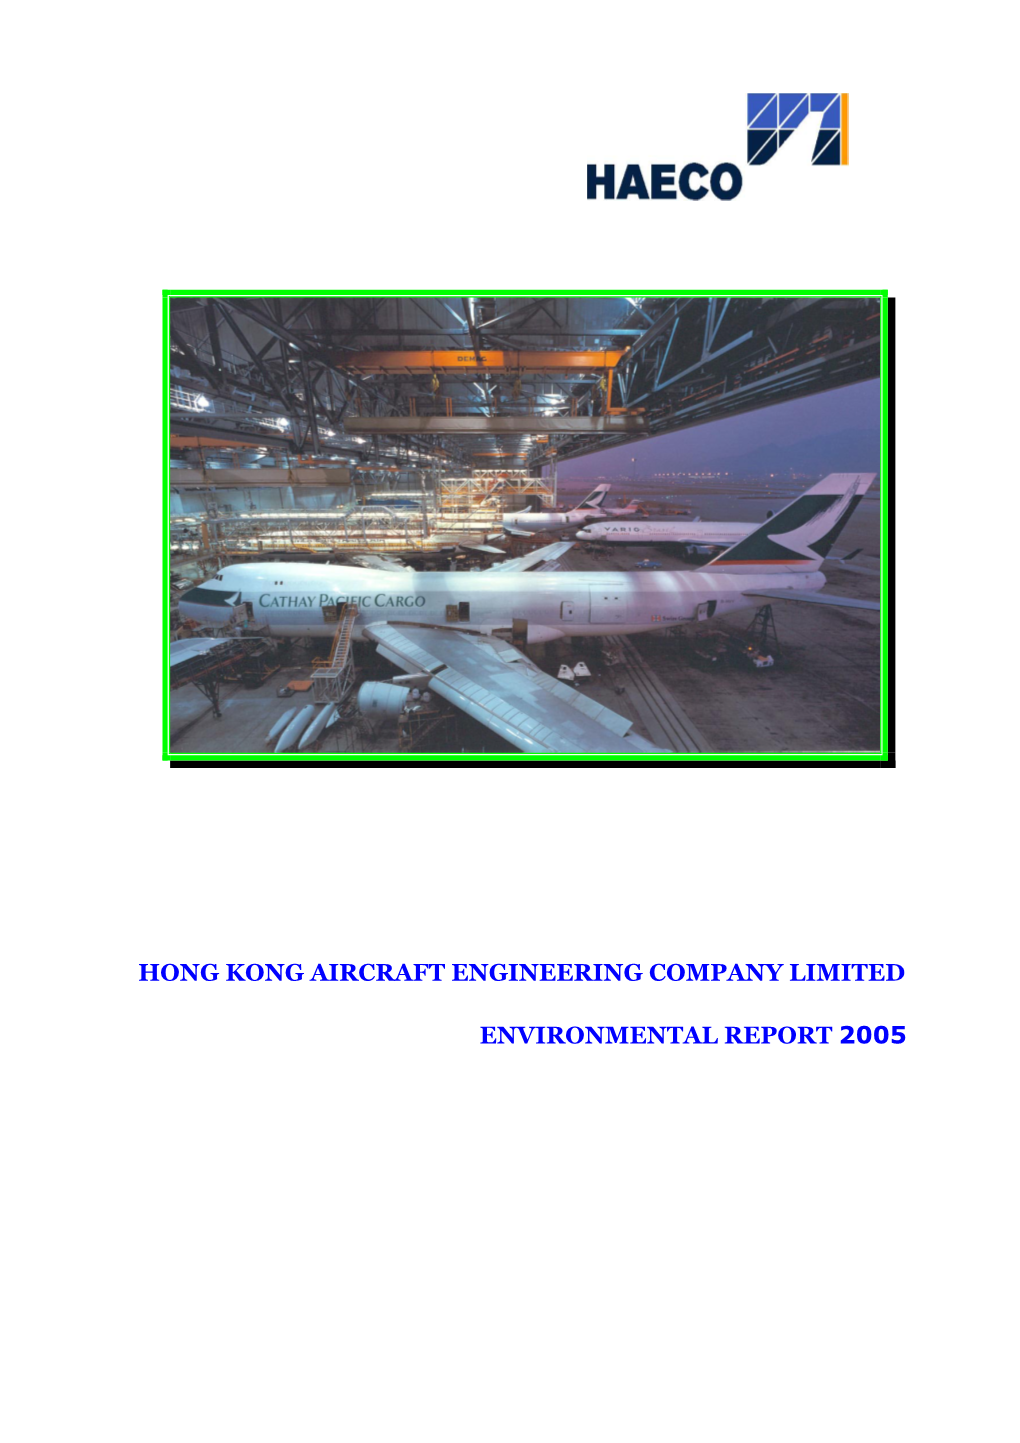 Hong Kong Aircraft Engineering Company Limited Environmental Report 2005